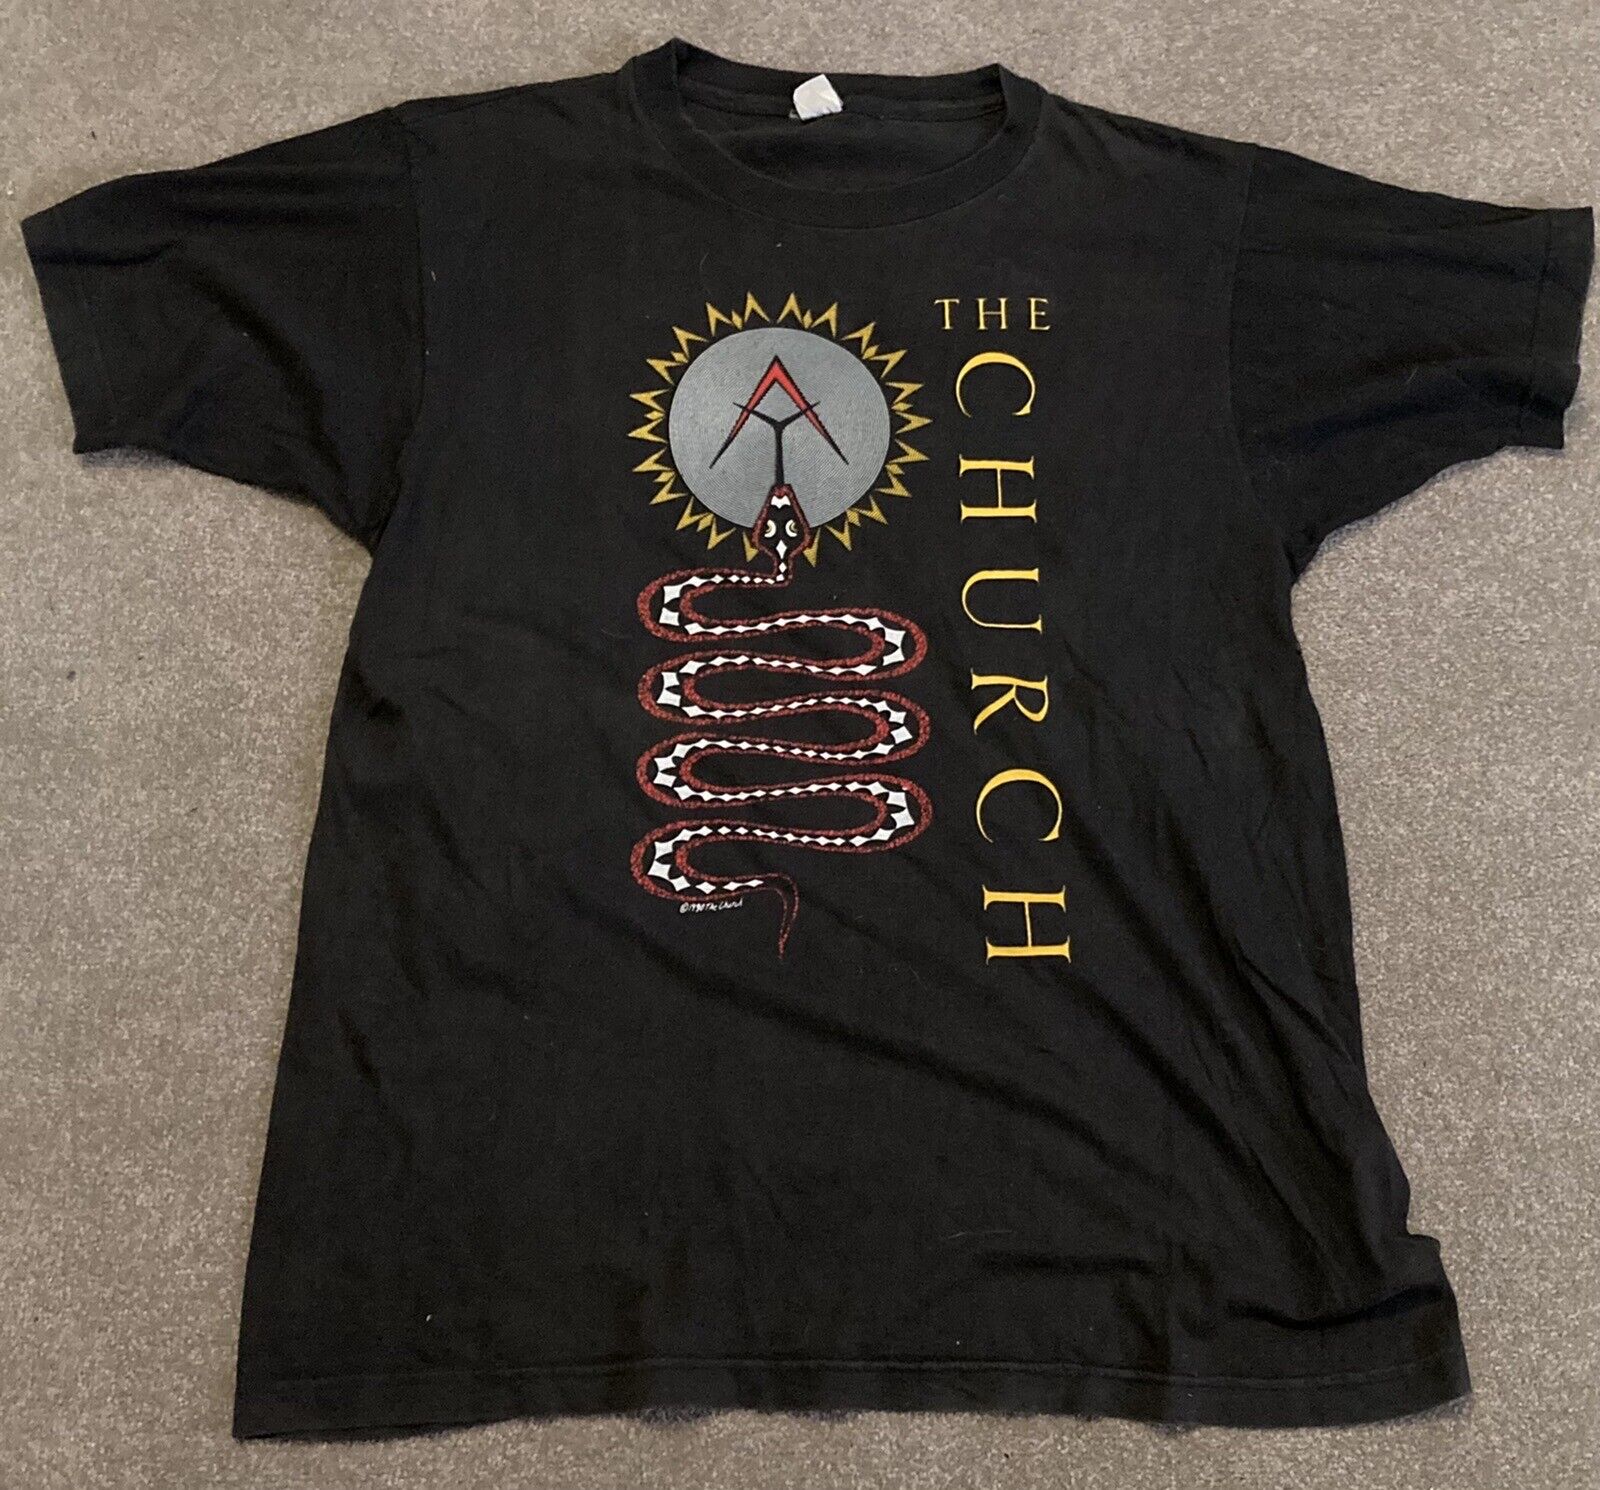 THE CHURCH - 1990 European Tour RARE ORIGINAL VINTAGE T-shirt (1990)